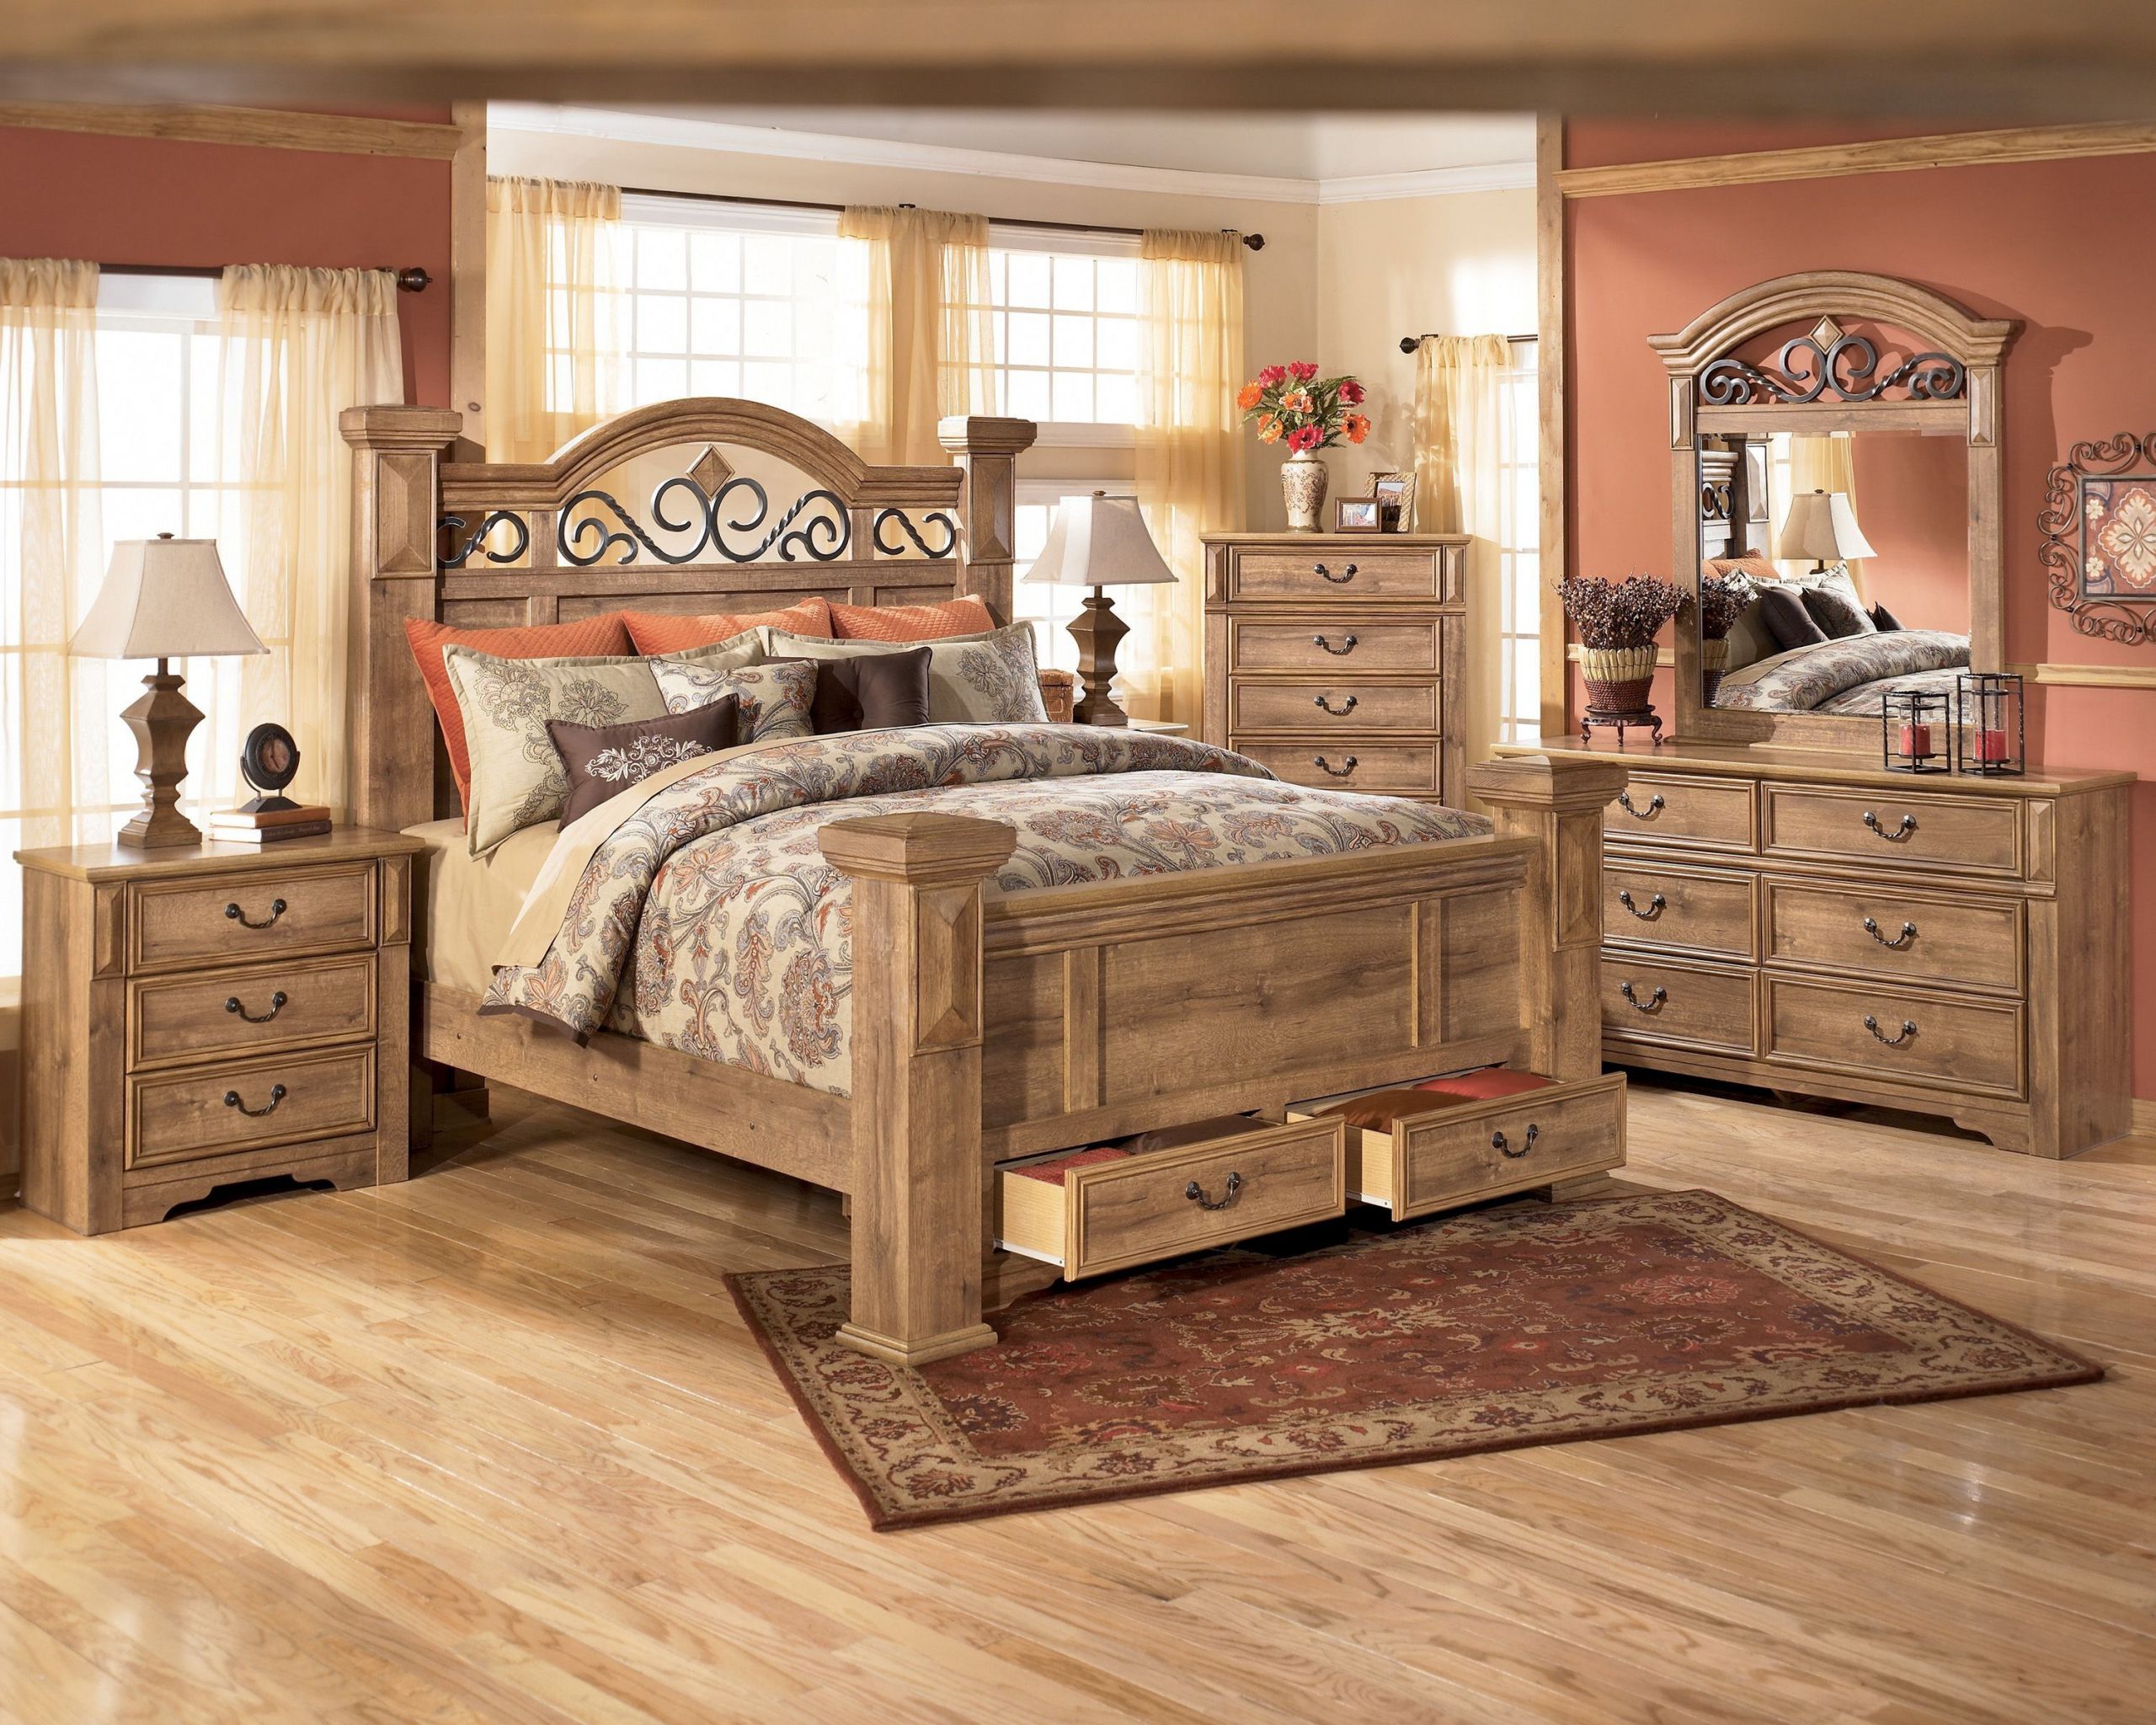 Rustic Bedroom Sets King
 California King Bedroom Furniture Sets